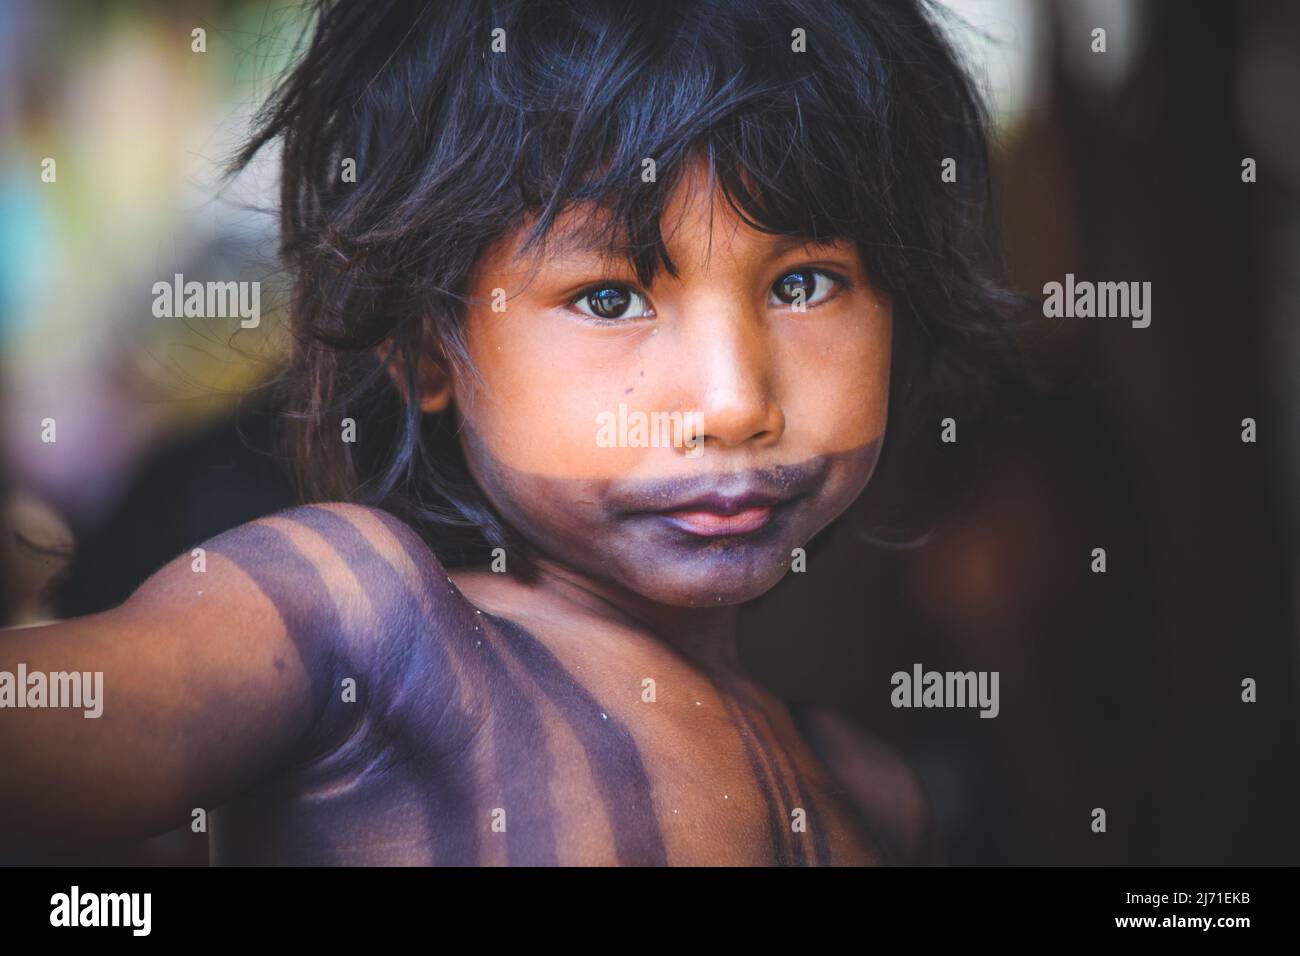 Bellissimo bambino indiano della tribù Asurini nell'Amazzonia brasiliana Foto Stock